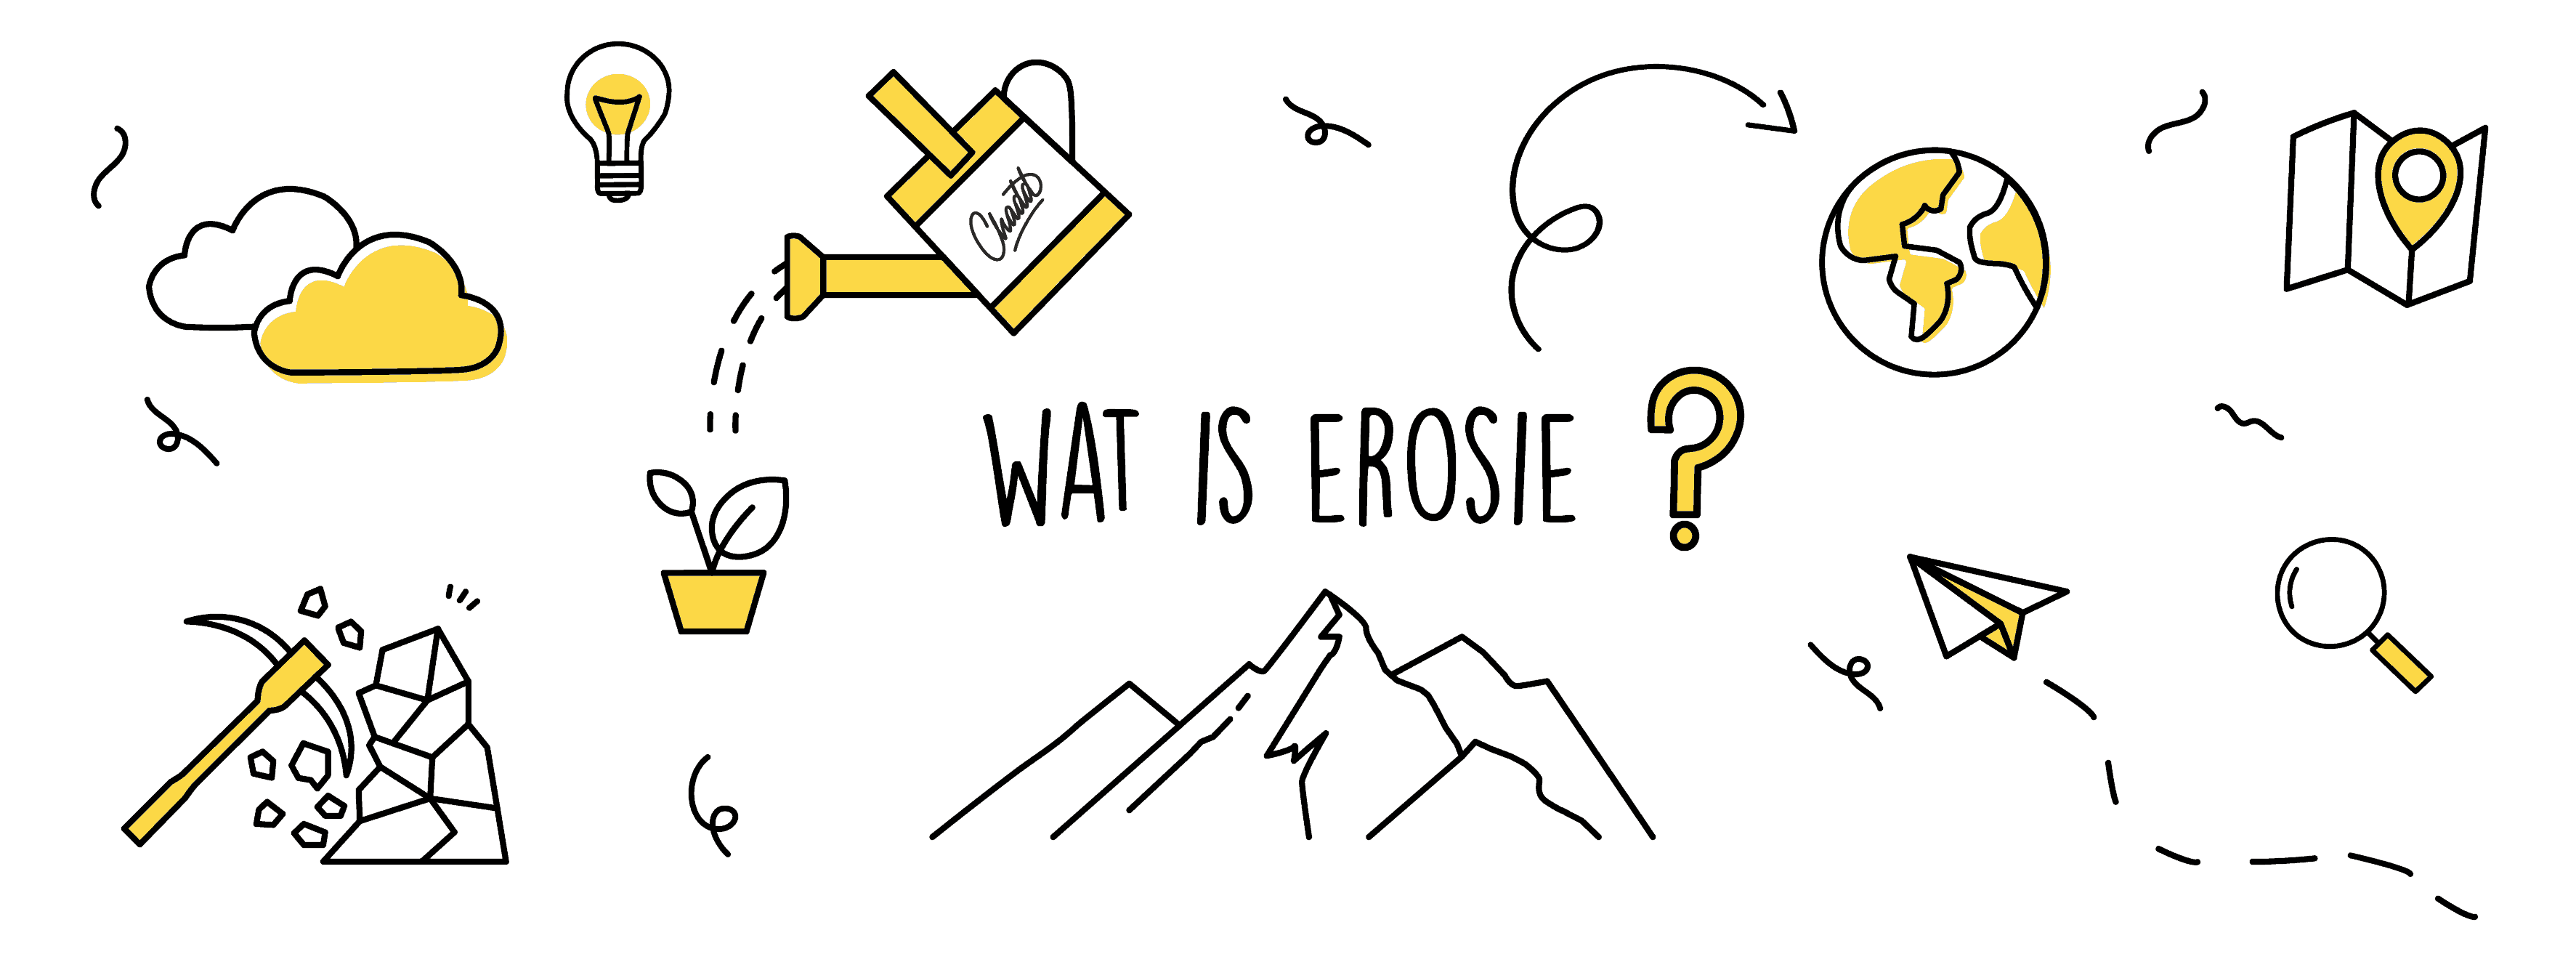 Wat is erosie?